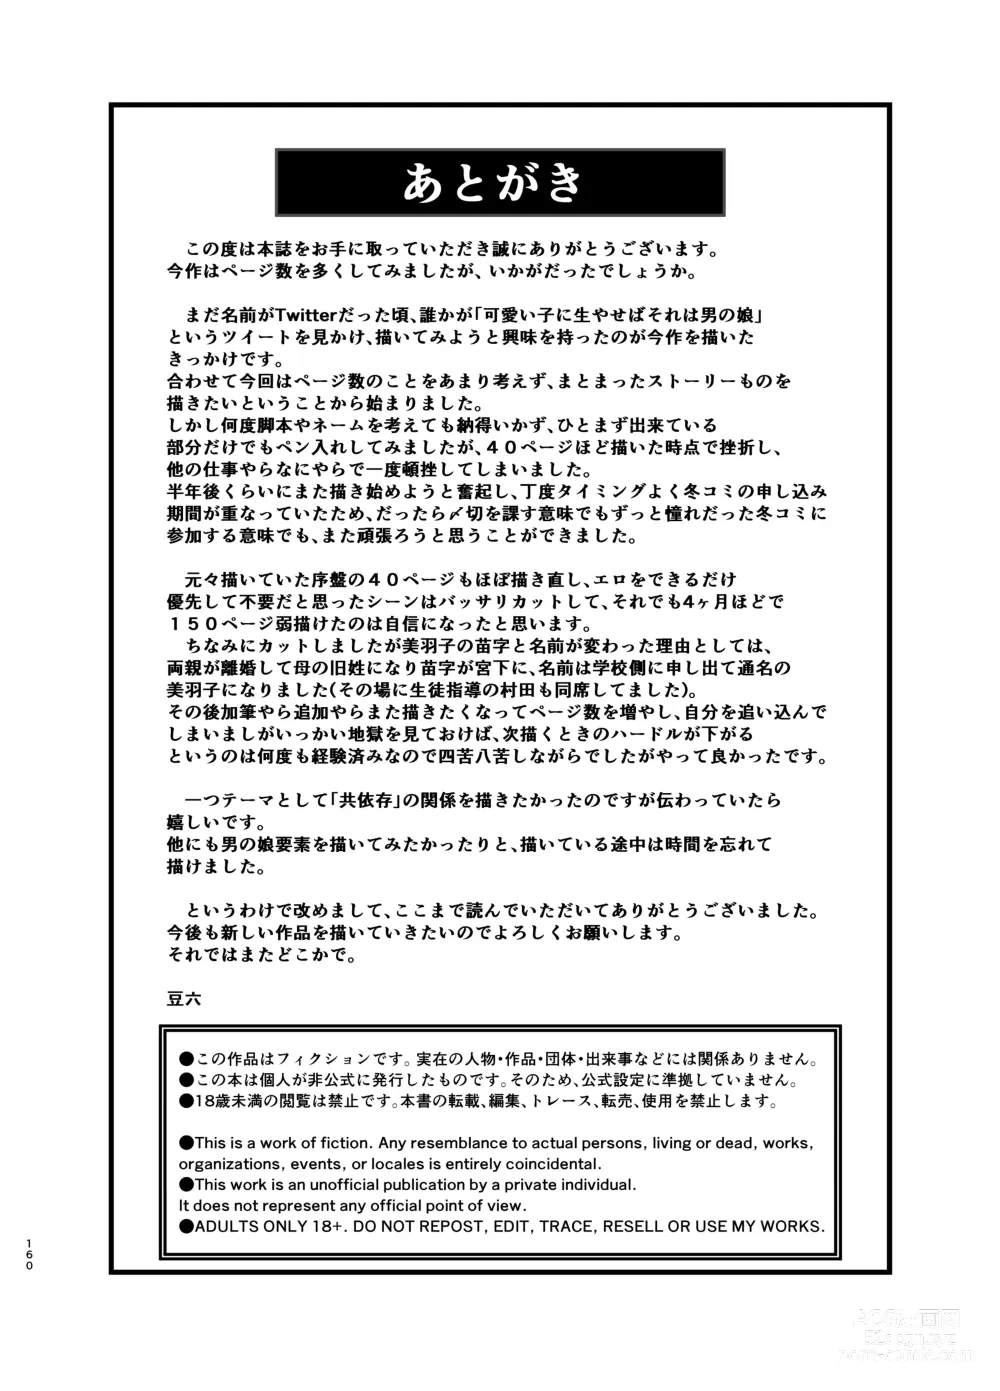 Page 159 of doujinshi Soushi Souai.